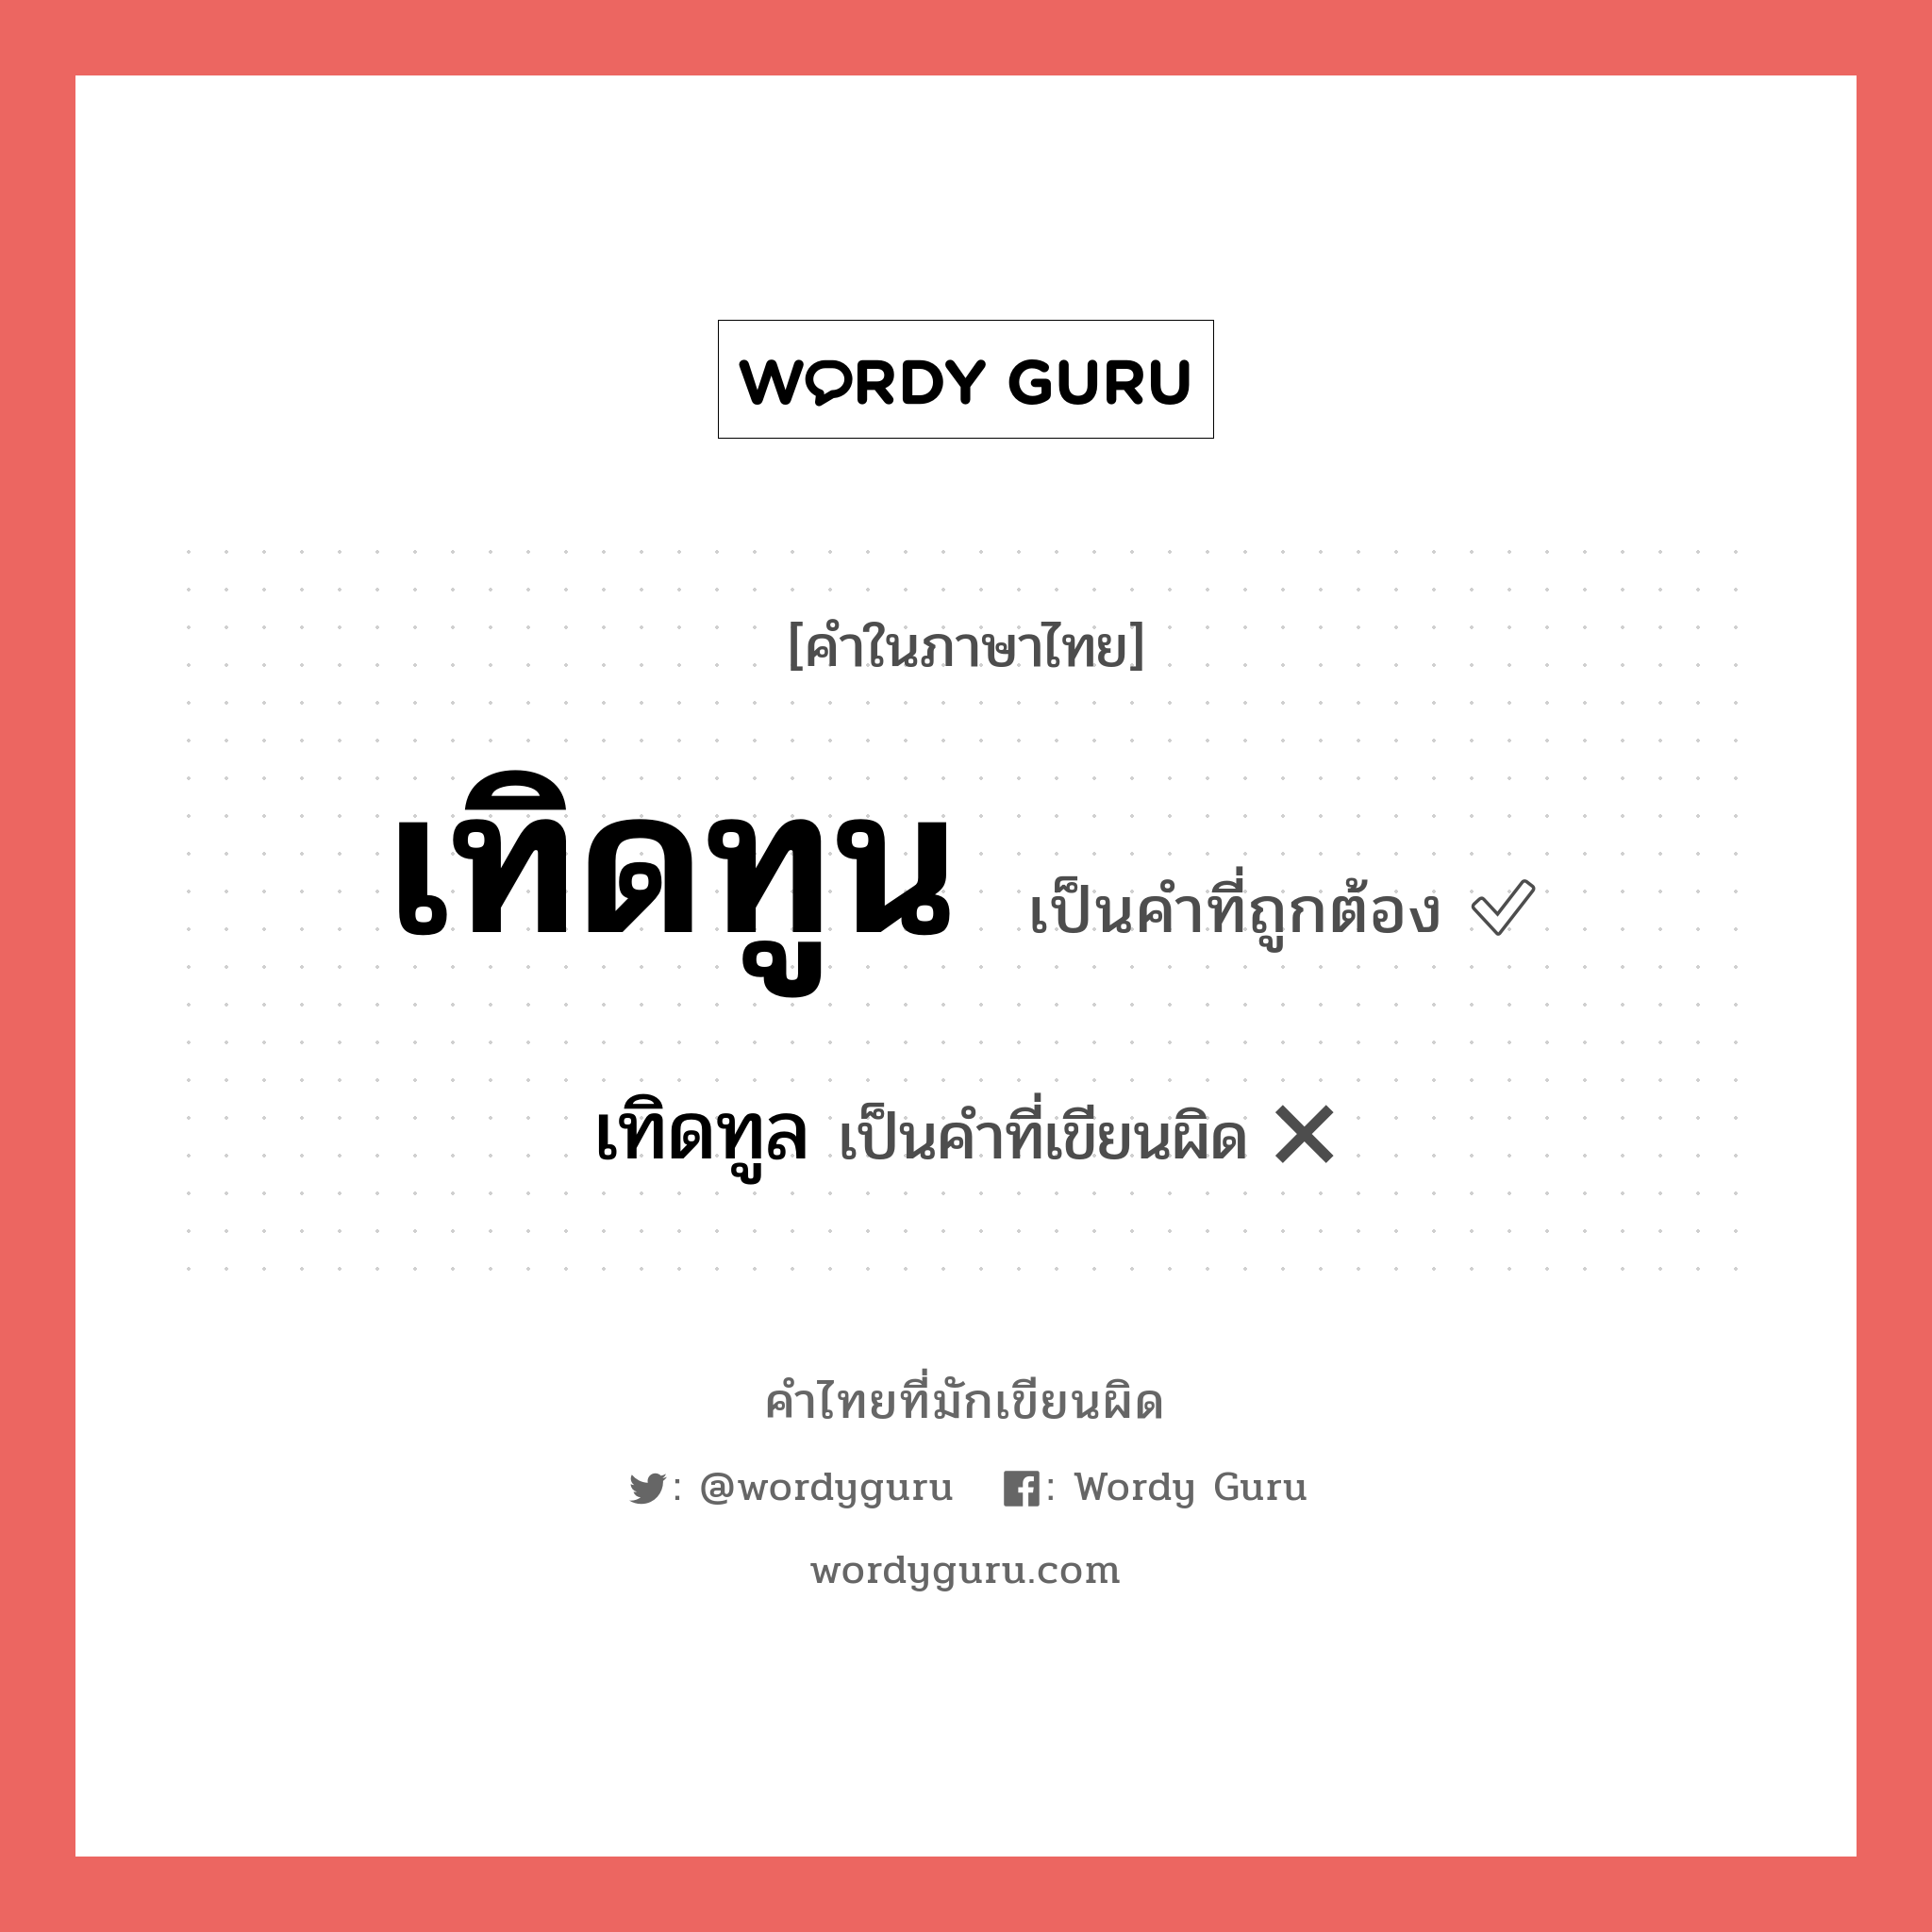 เทิดทูน หรือ เทิดทูล คำไหนเขียนถูก?, คำในภาษาไทยที่มักเขียนผิด เทิดทูน คำที่ผิด ❌ เทิดทูล